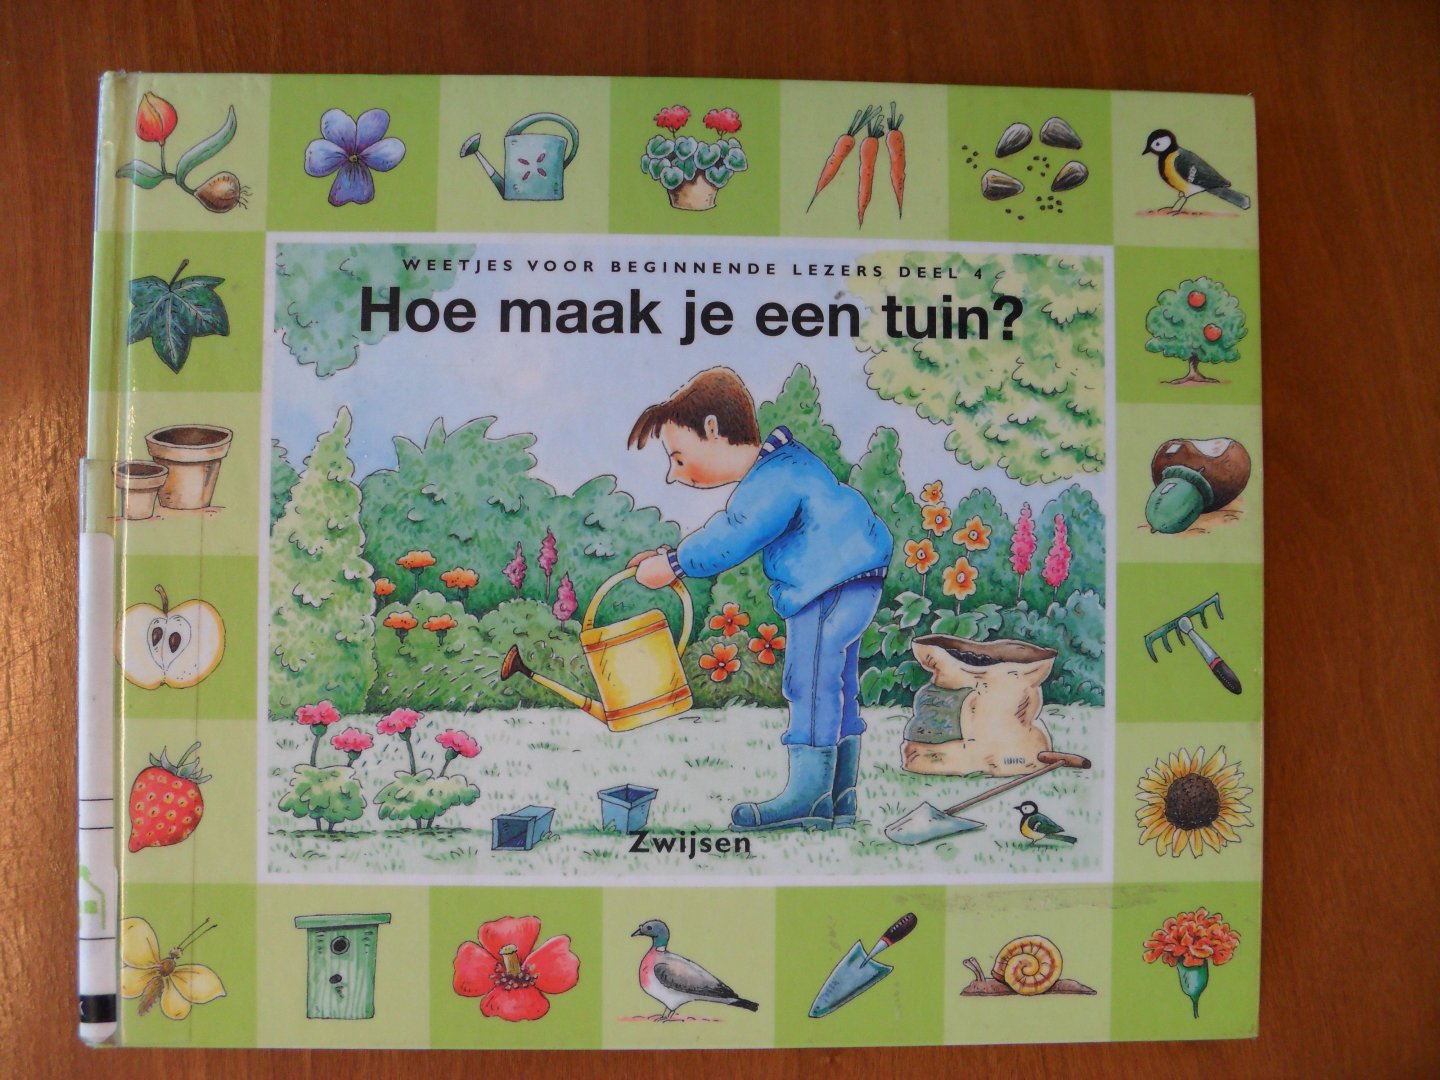 Eck, R. van - Hoe maak je een tuin?